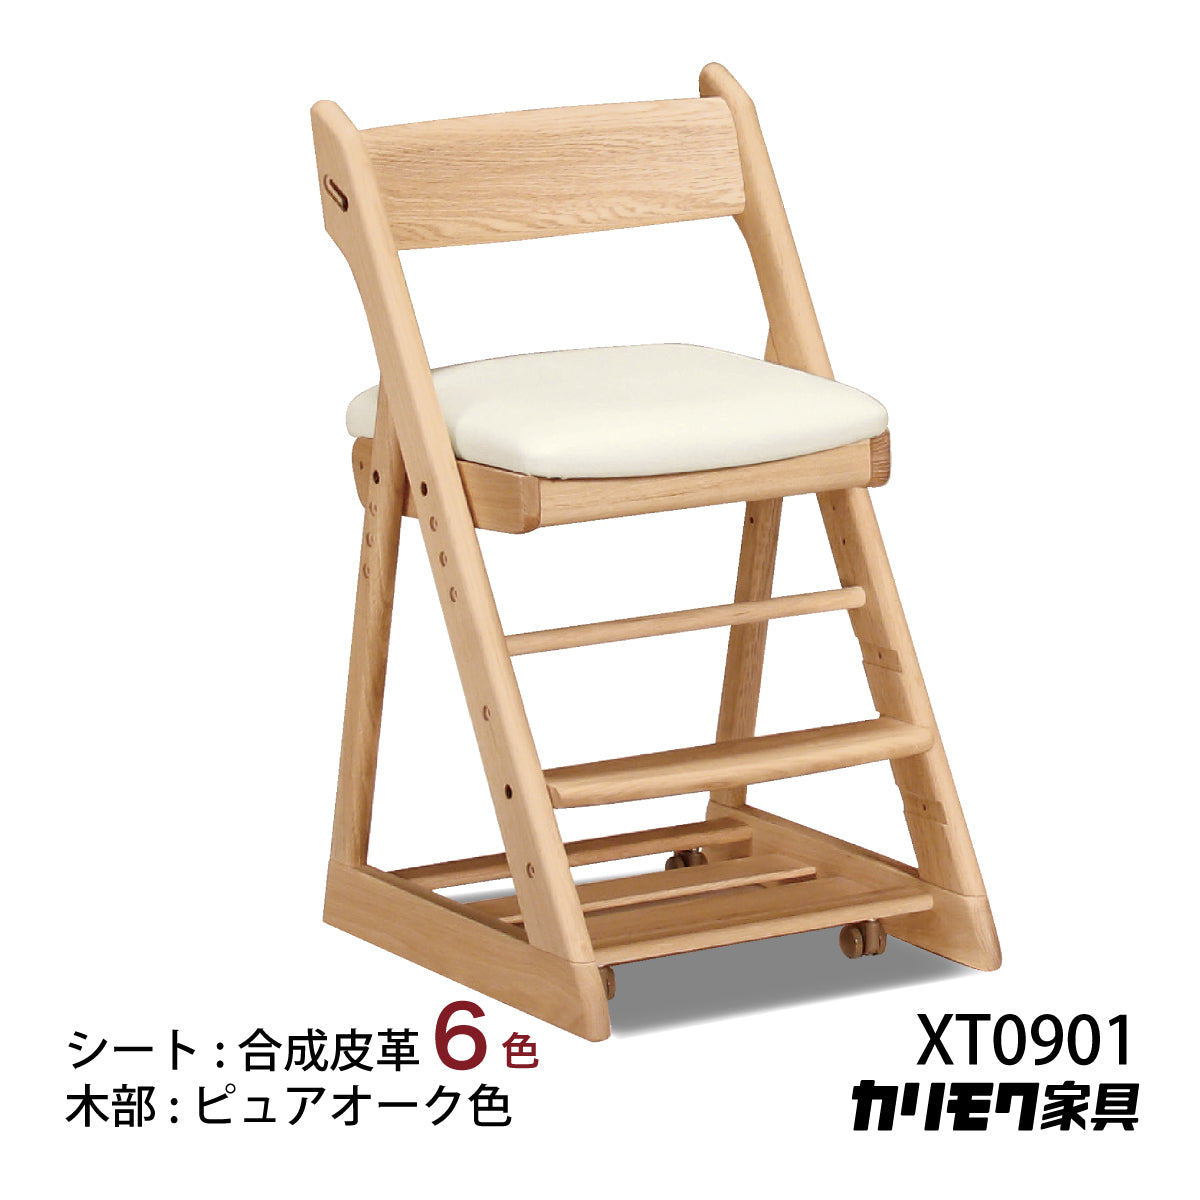 カリモク 学習椅子 XT0901 ピュアオーク色 オーク材 デスクチェア 